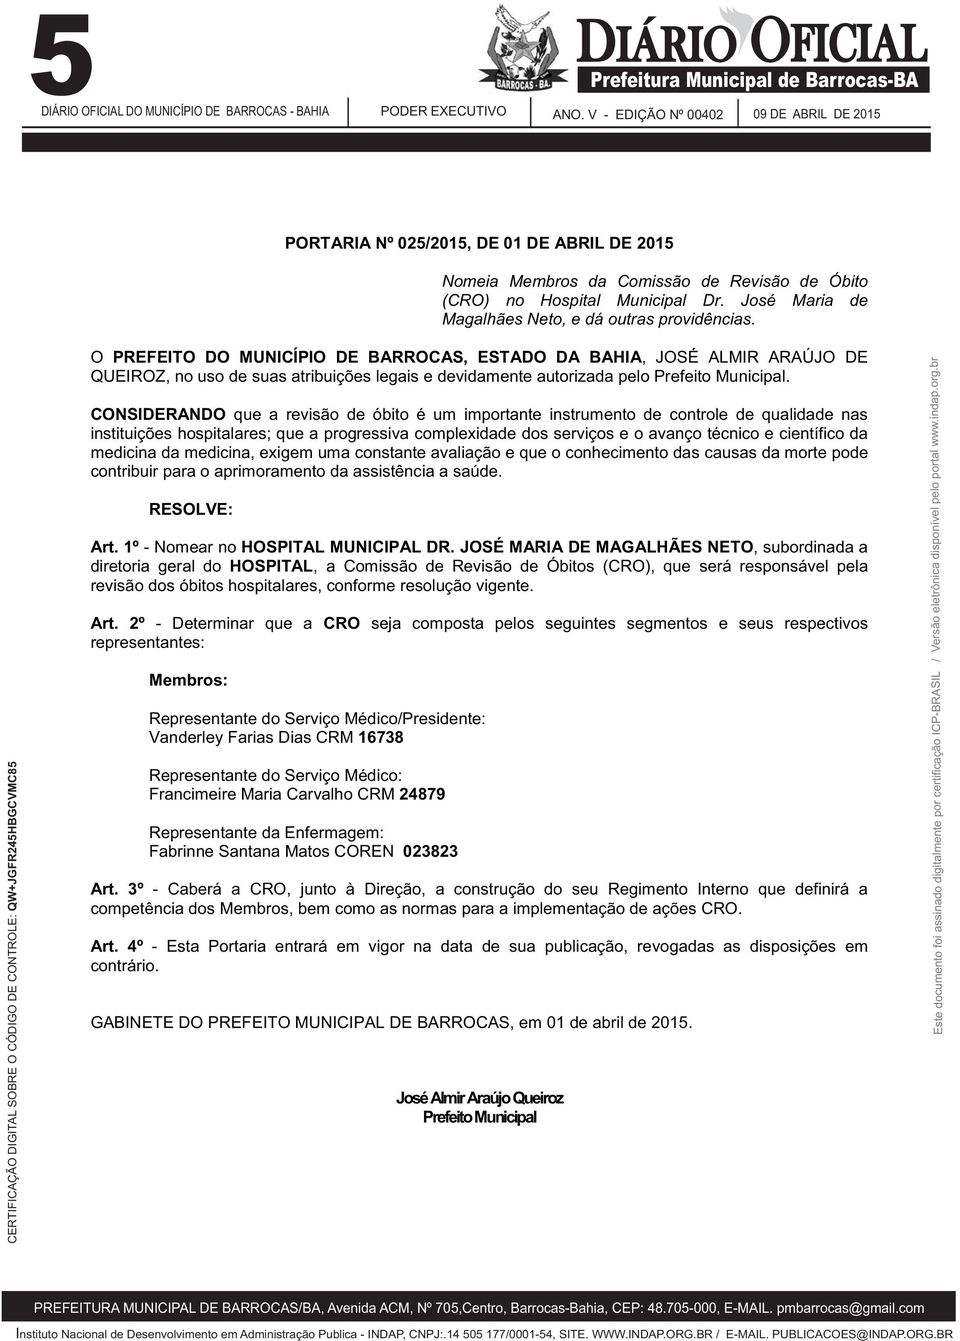 O PREFEITO DO MUNICÍPIO DE BARROCAS, ESTADO DA BAHIA, JOSÉ ALMIR ARAÚJO DE QUEIROZ, no uso de suas atribuições legais e devidamente autorizada pelo Prefeito Municipal.